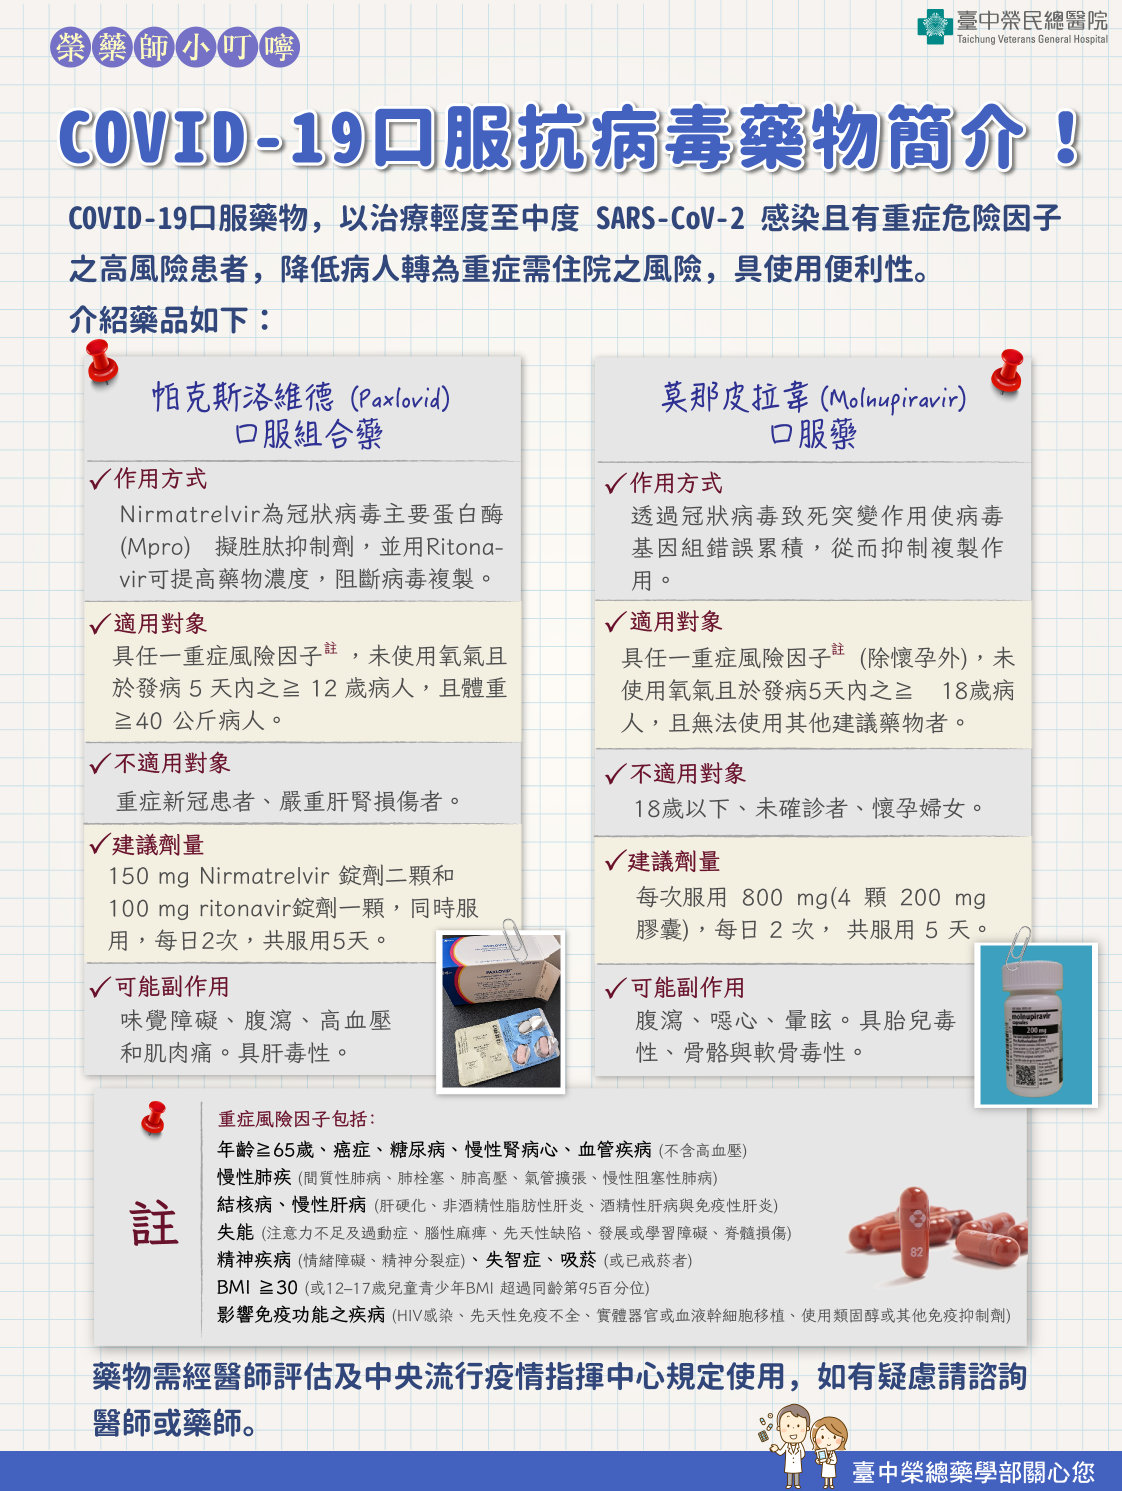 OVID-19治療用口服抗病毒藥物簡介